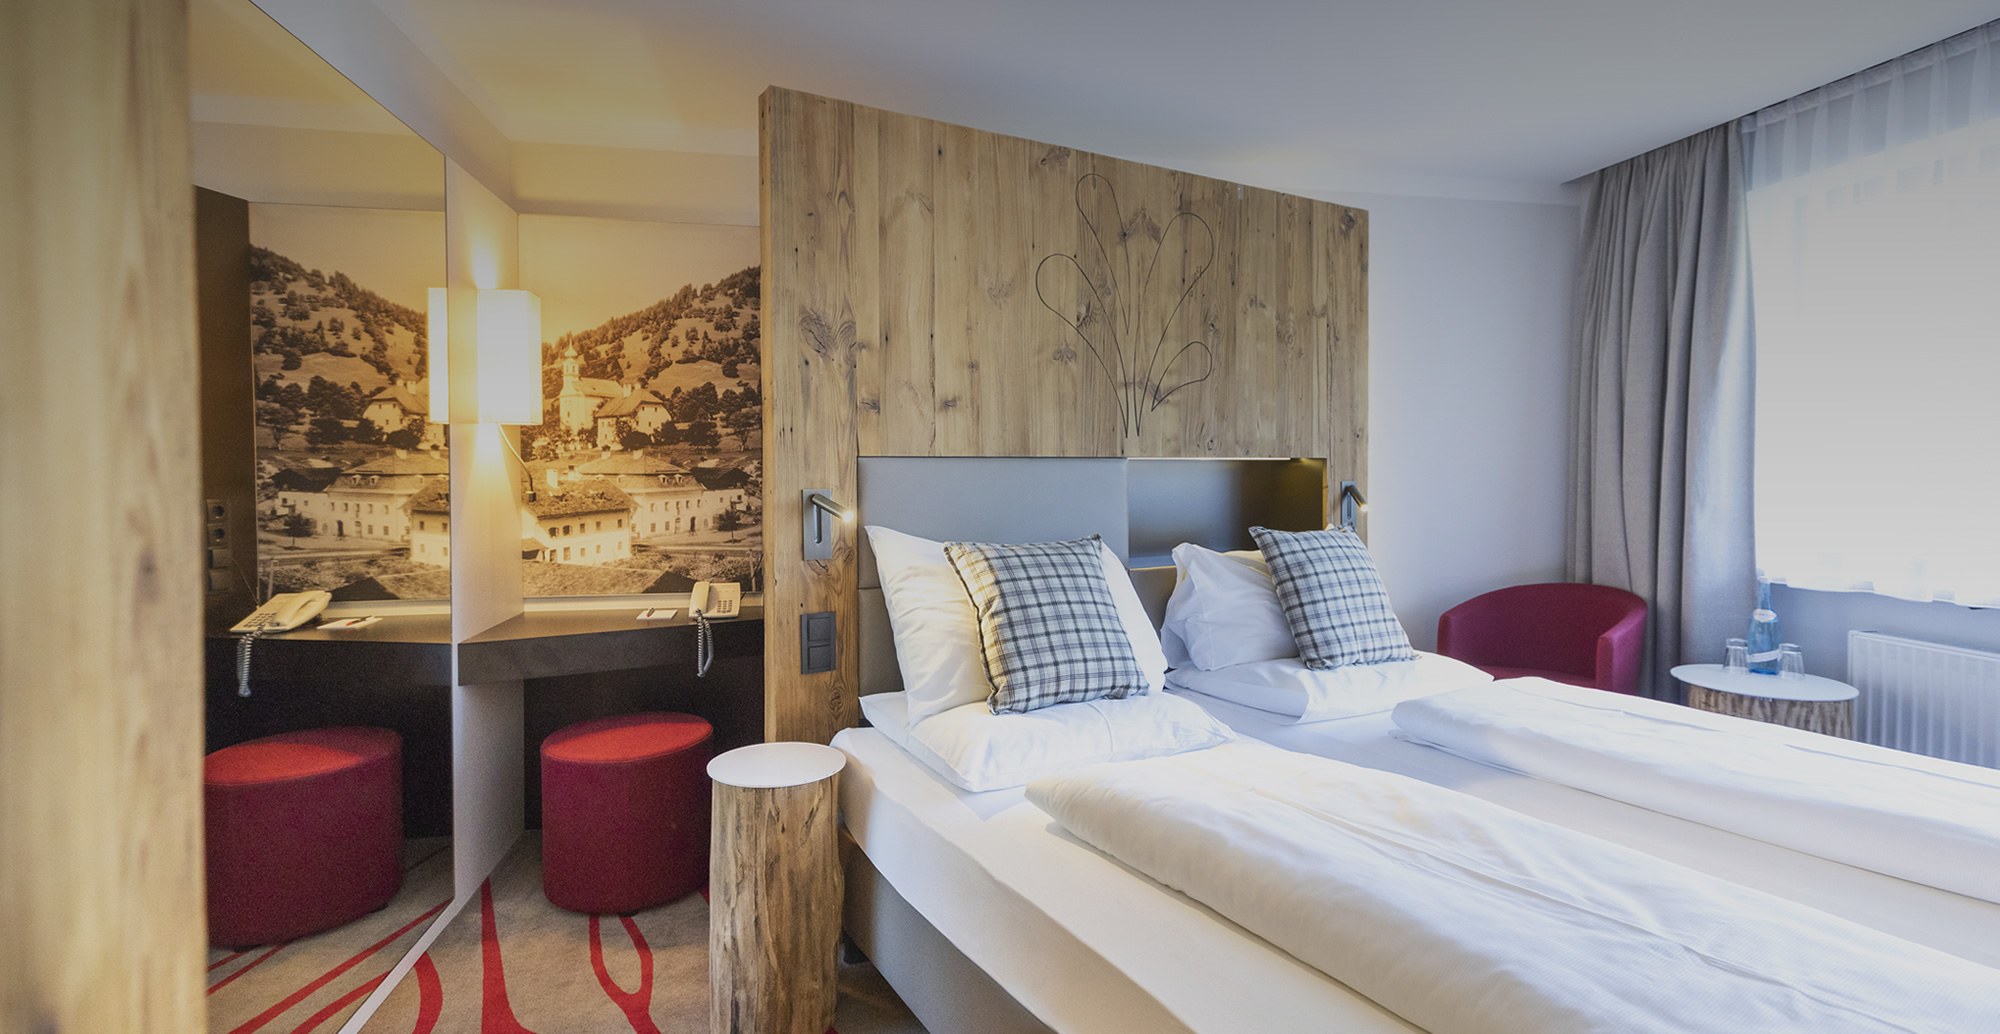 Komfortabel eingerichtete Zimmer mit traumhaftem Panoramablick auf Flachau